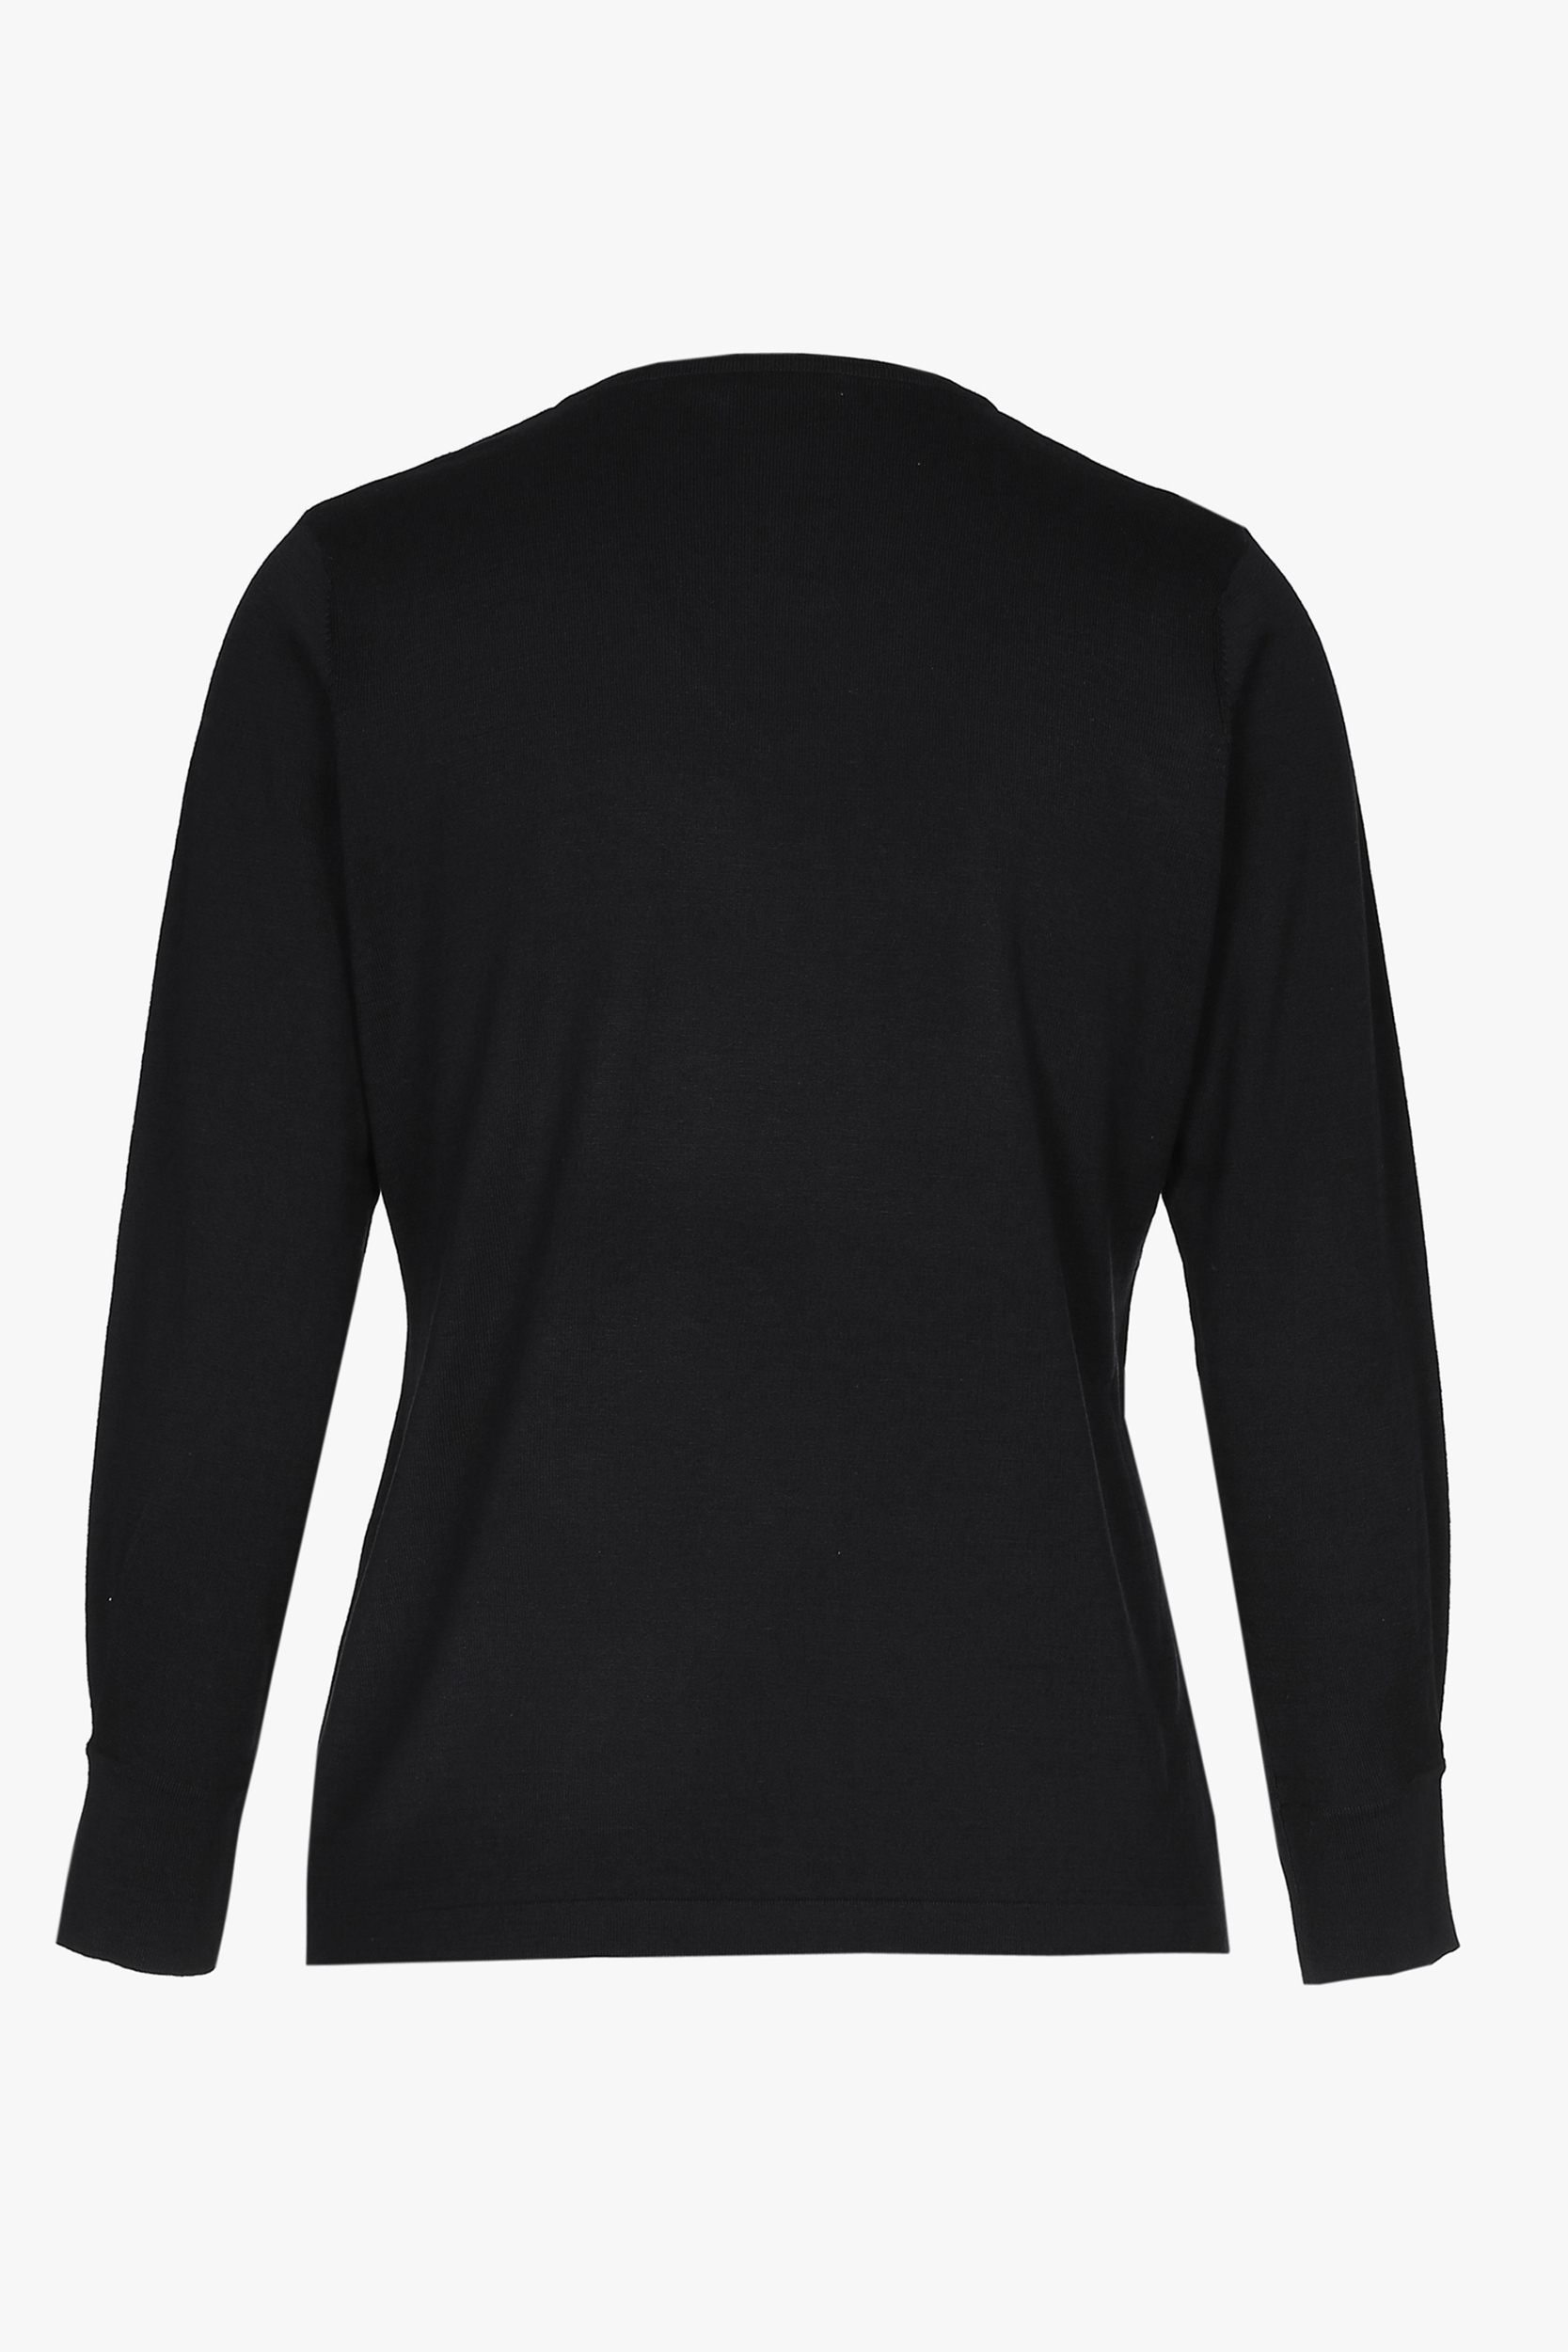 Schwarzer Seiden-Pullover mit langen Ärmeln